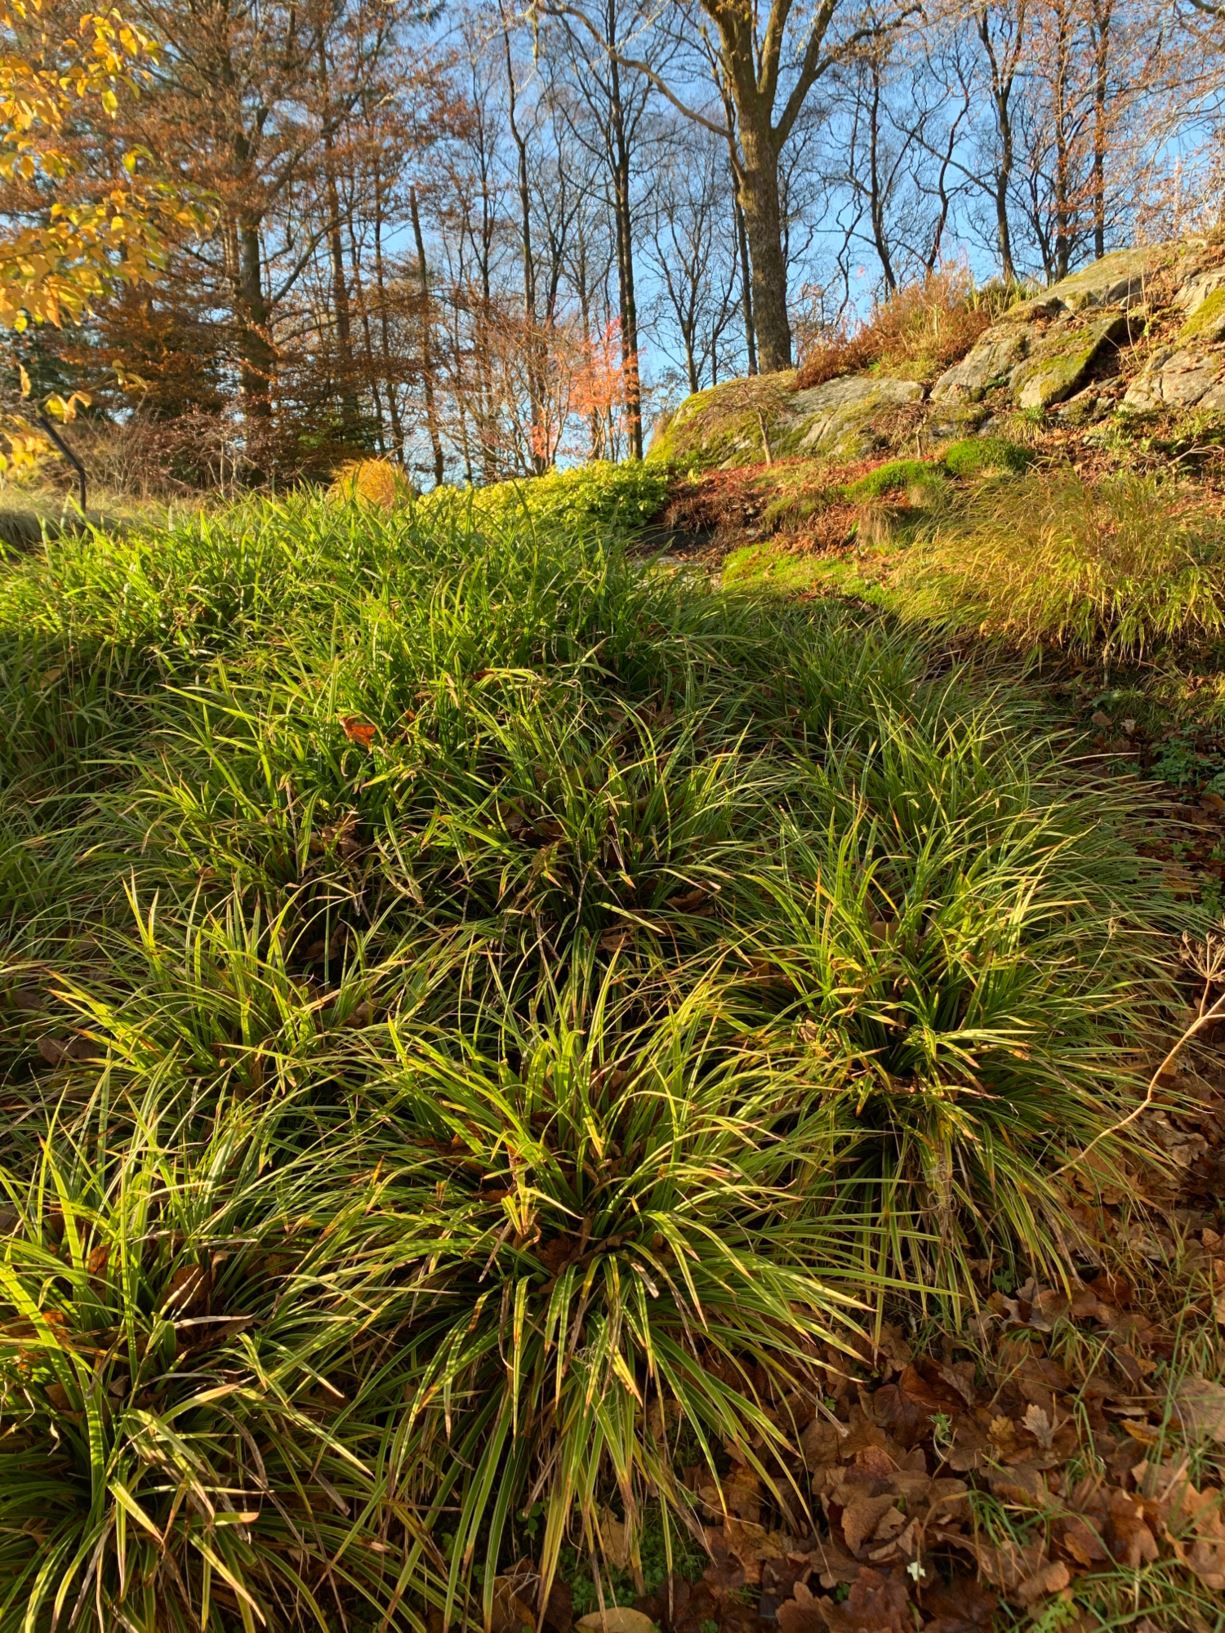 Carex morrowii 'Irish Green'